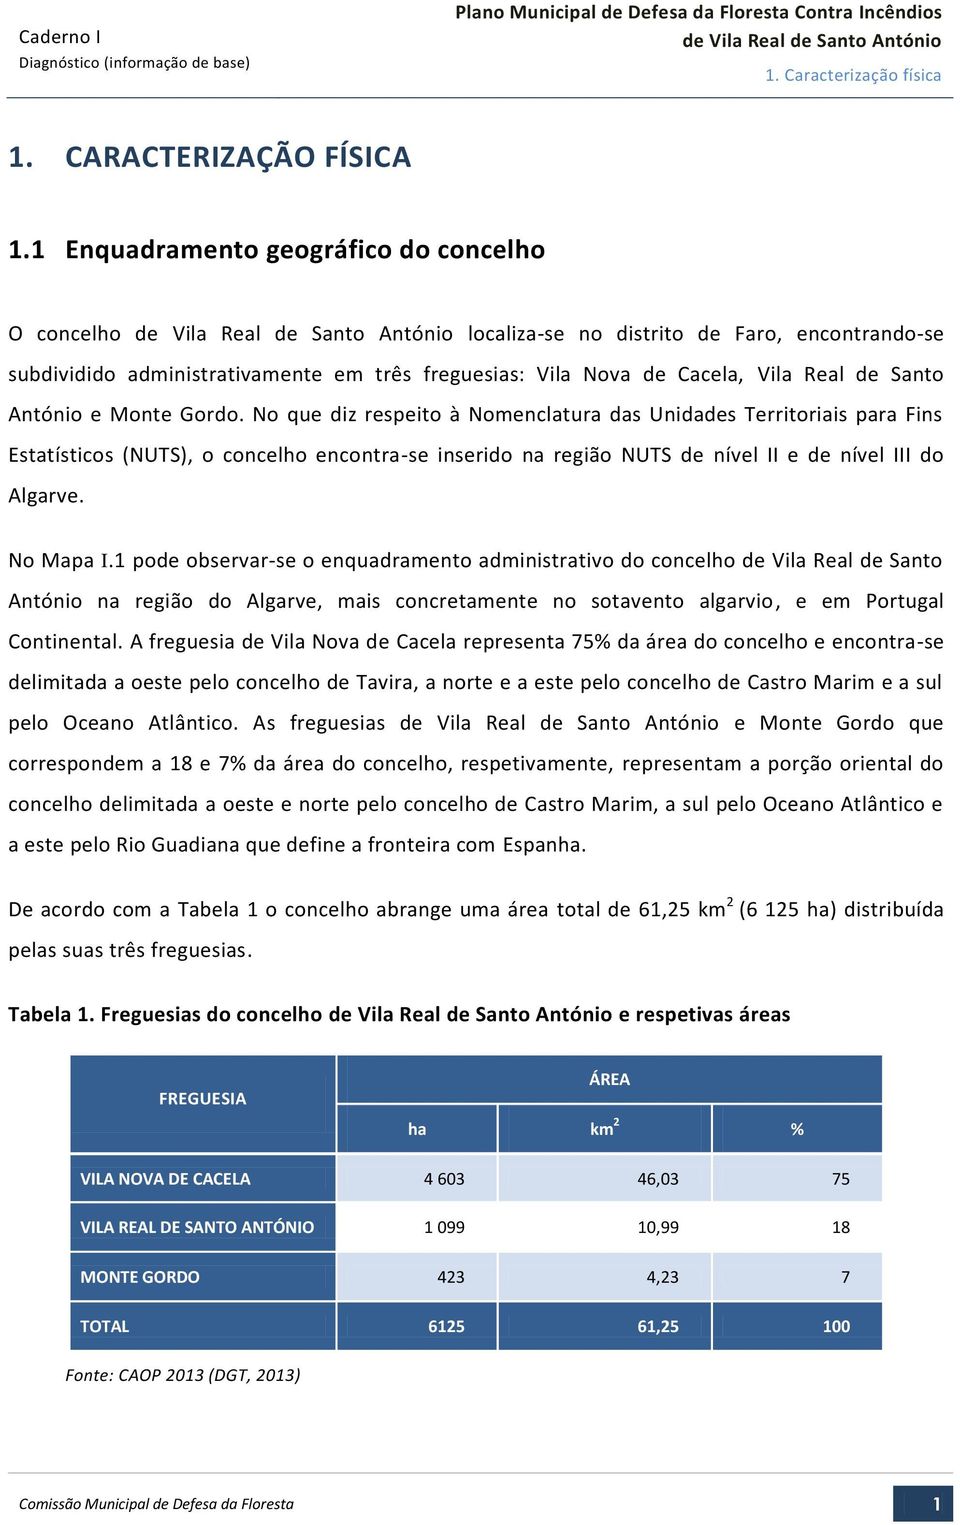 Monte Gordo. No que diz respeito à Nomenclatura das Unidades Territoriais para Fins Estatísticos (NUTS), o concelho encontra-se inserido na região NUTS de nível II e de nível III do Algarve.